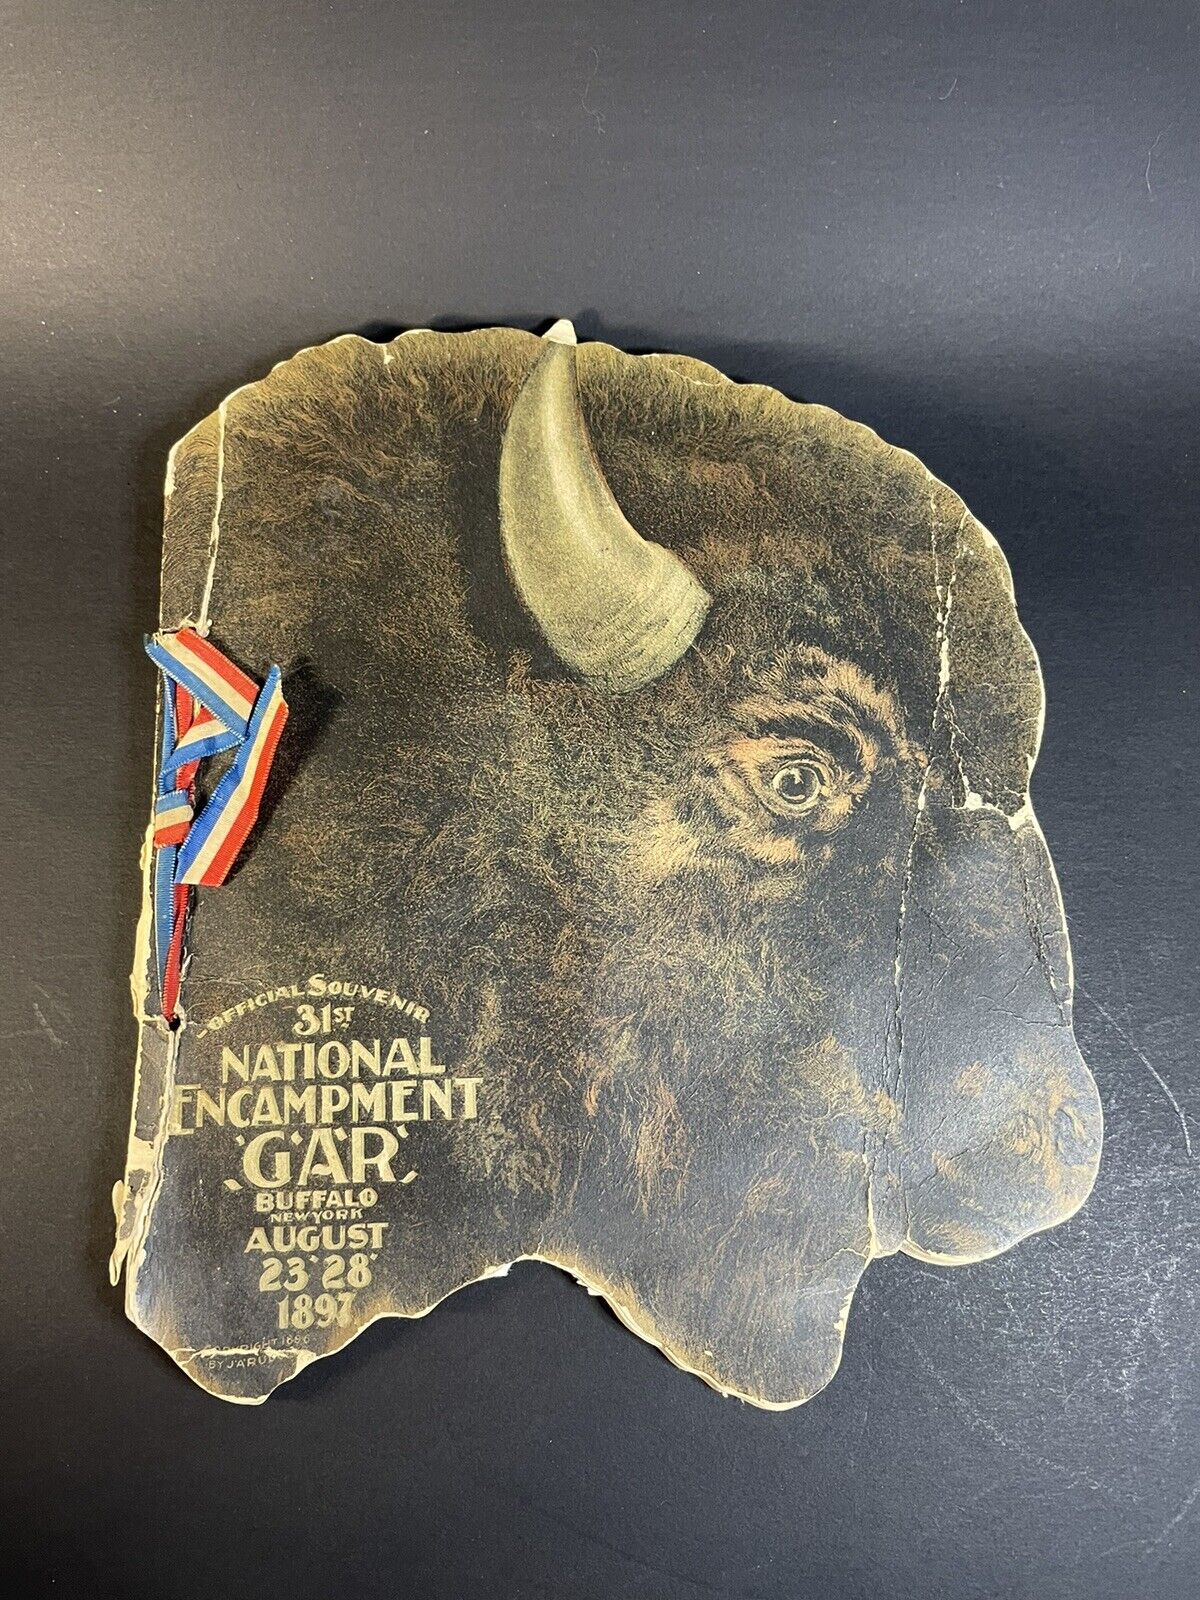 Antique 1987 GAR Souvenir Buffalo 31st National Encampment Pamphlet-damage